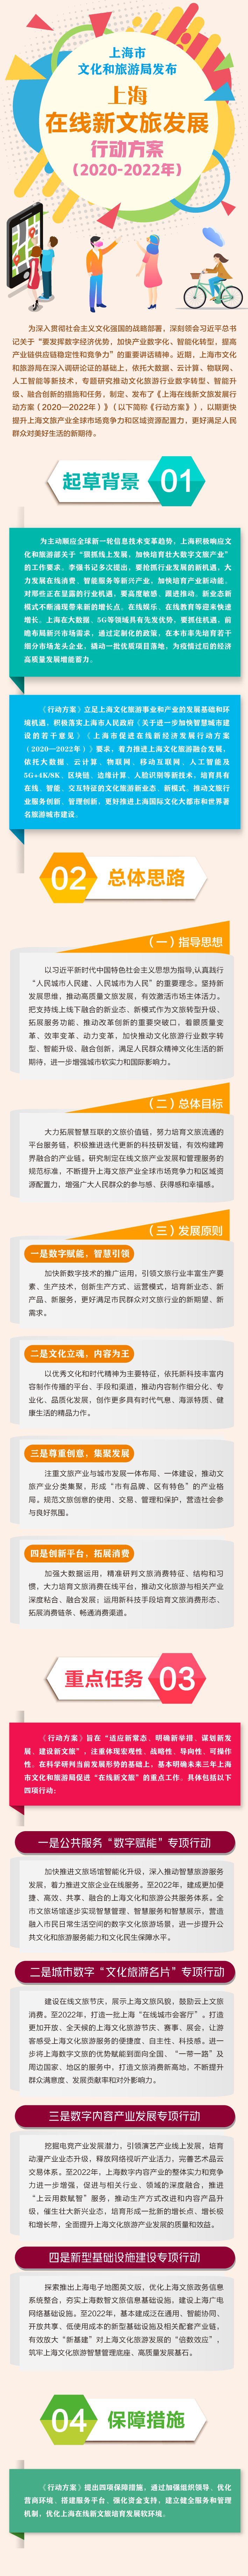 上海在线新文旅发展行动方案